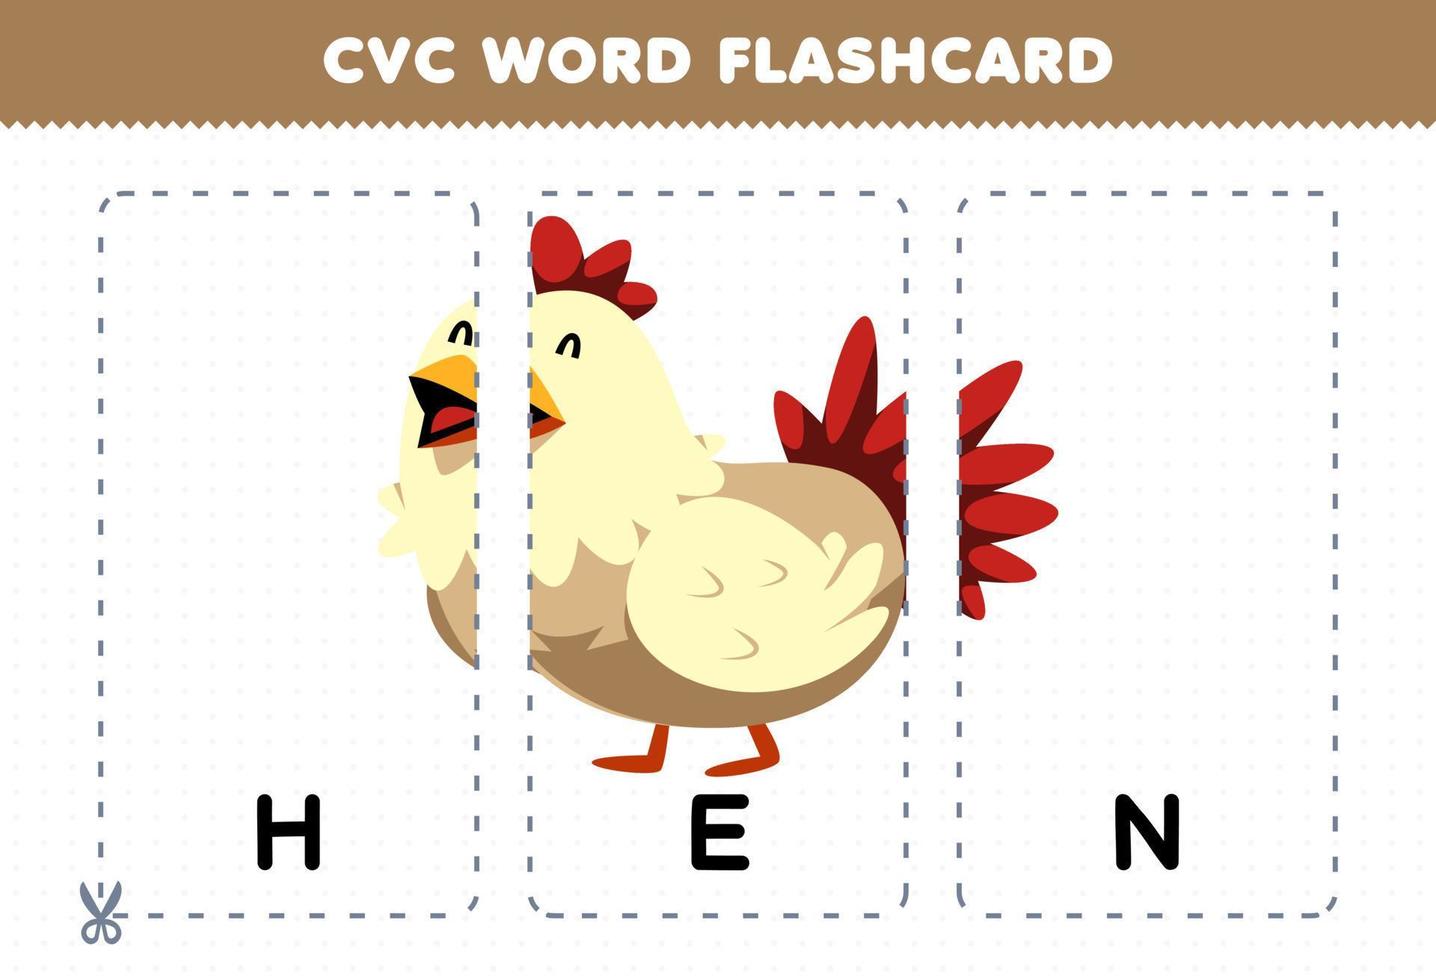 jogo de educação para crianças aprendendo palavra consoante vogal consoante com cartão de memória flash imprimível de ilustração de galinha de desenho animado bonito vetor